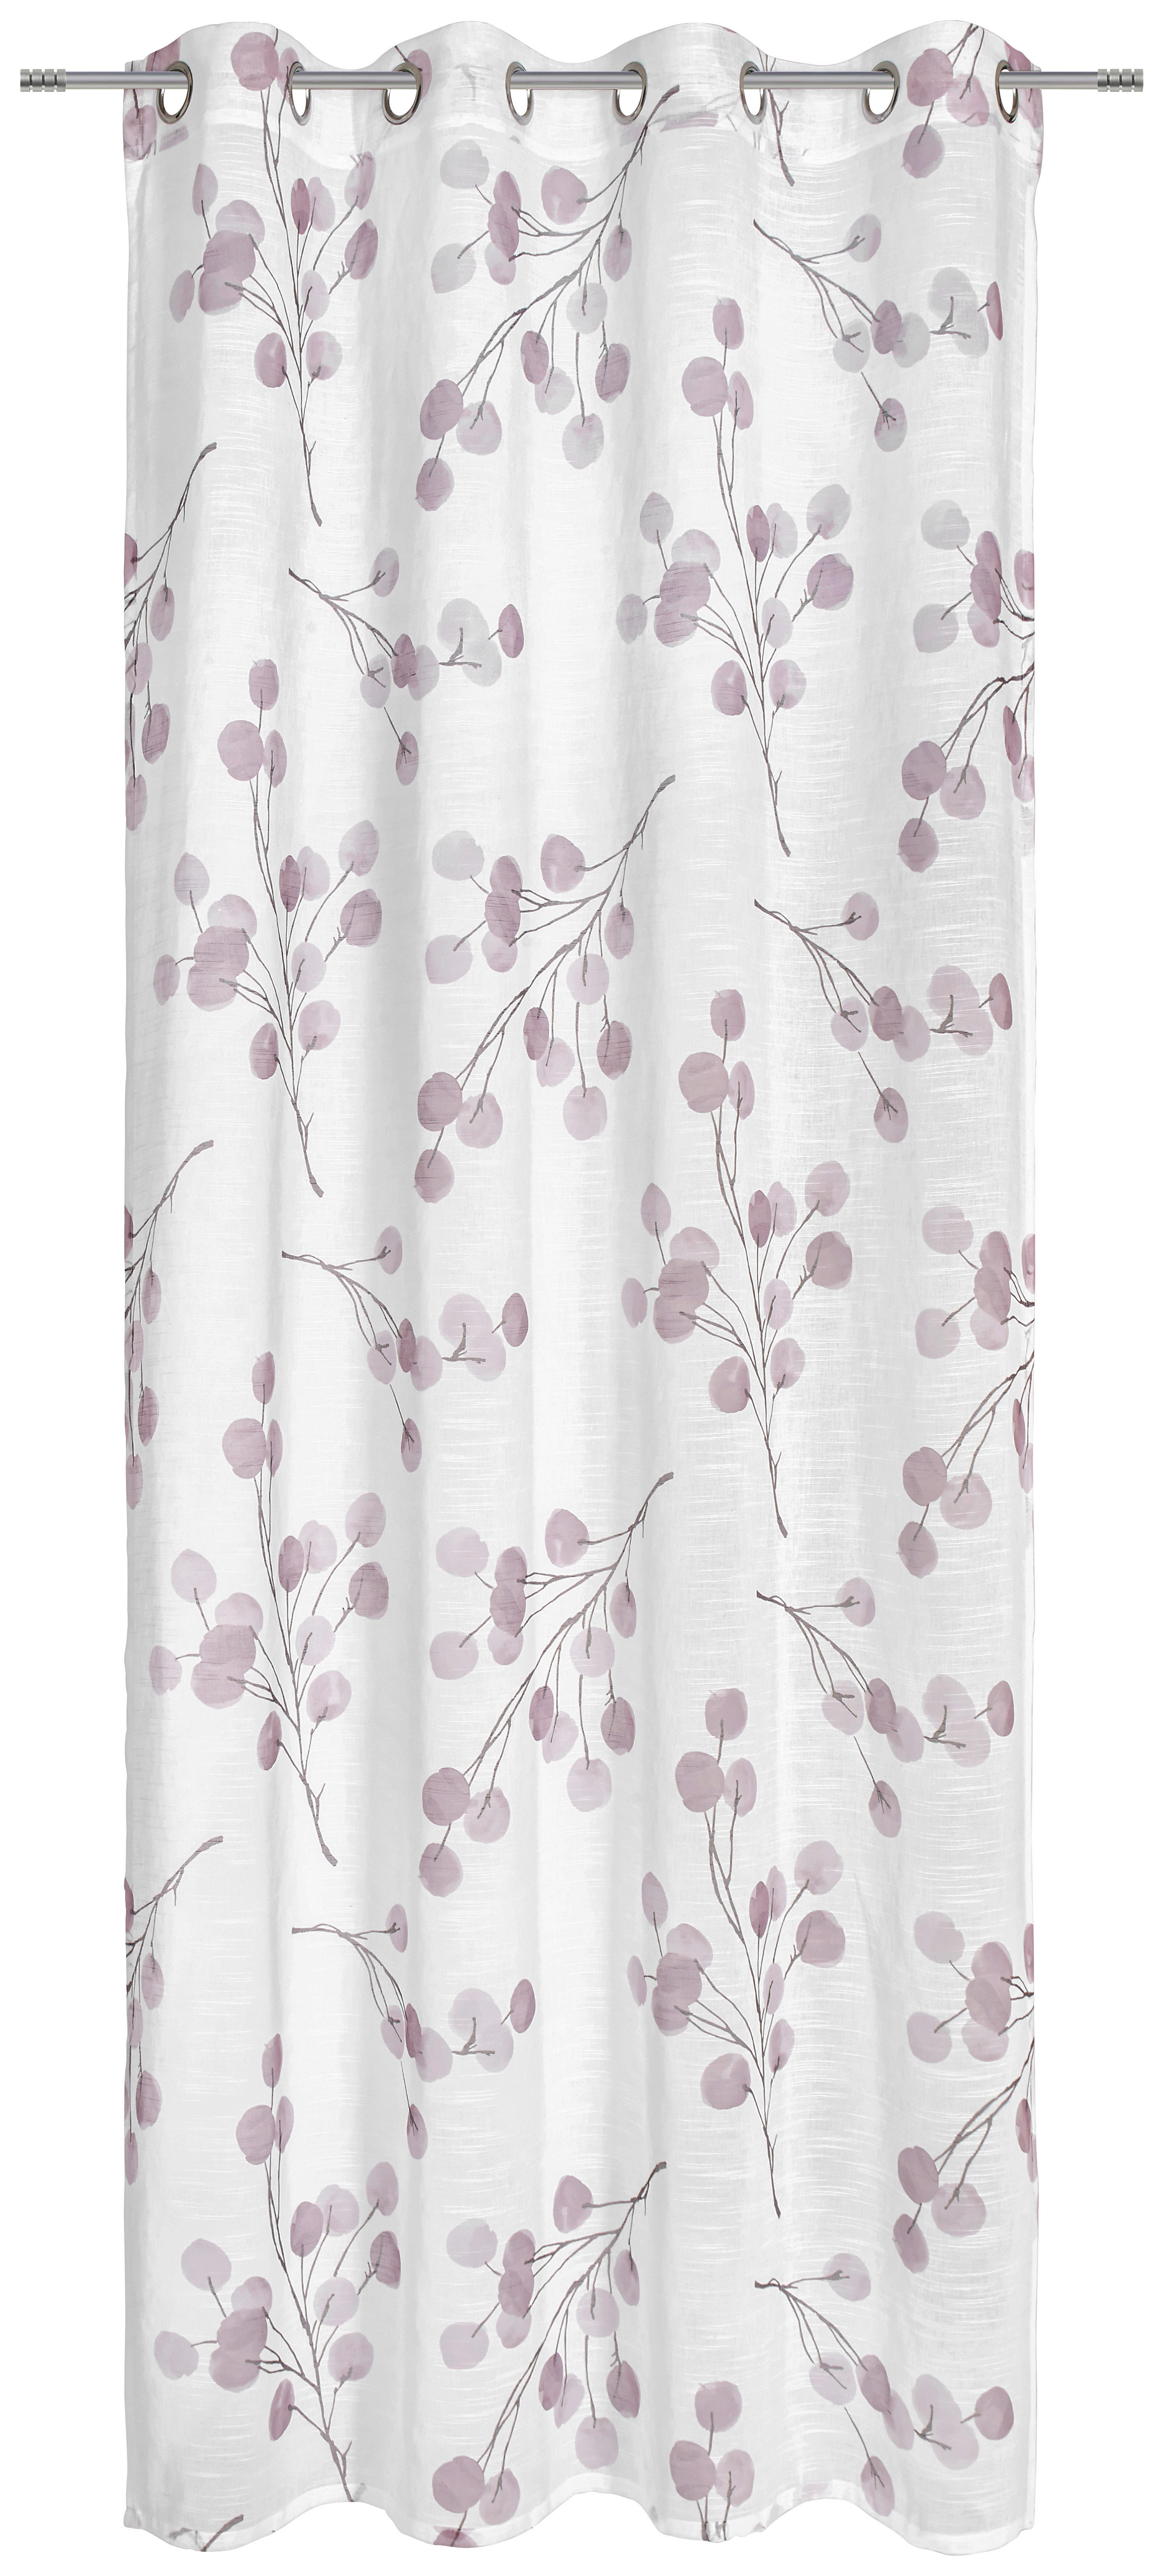 RINGLIS FÜGGÖNY Részben áttetsző  - Rózsaszín, Konventionell, Textil (135/245cm) - Esposa